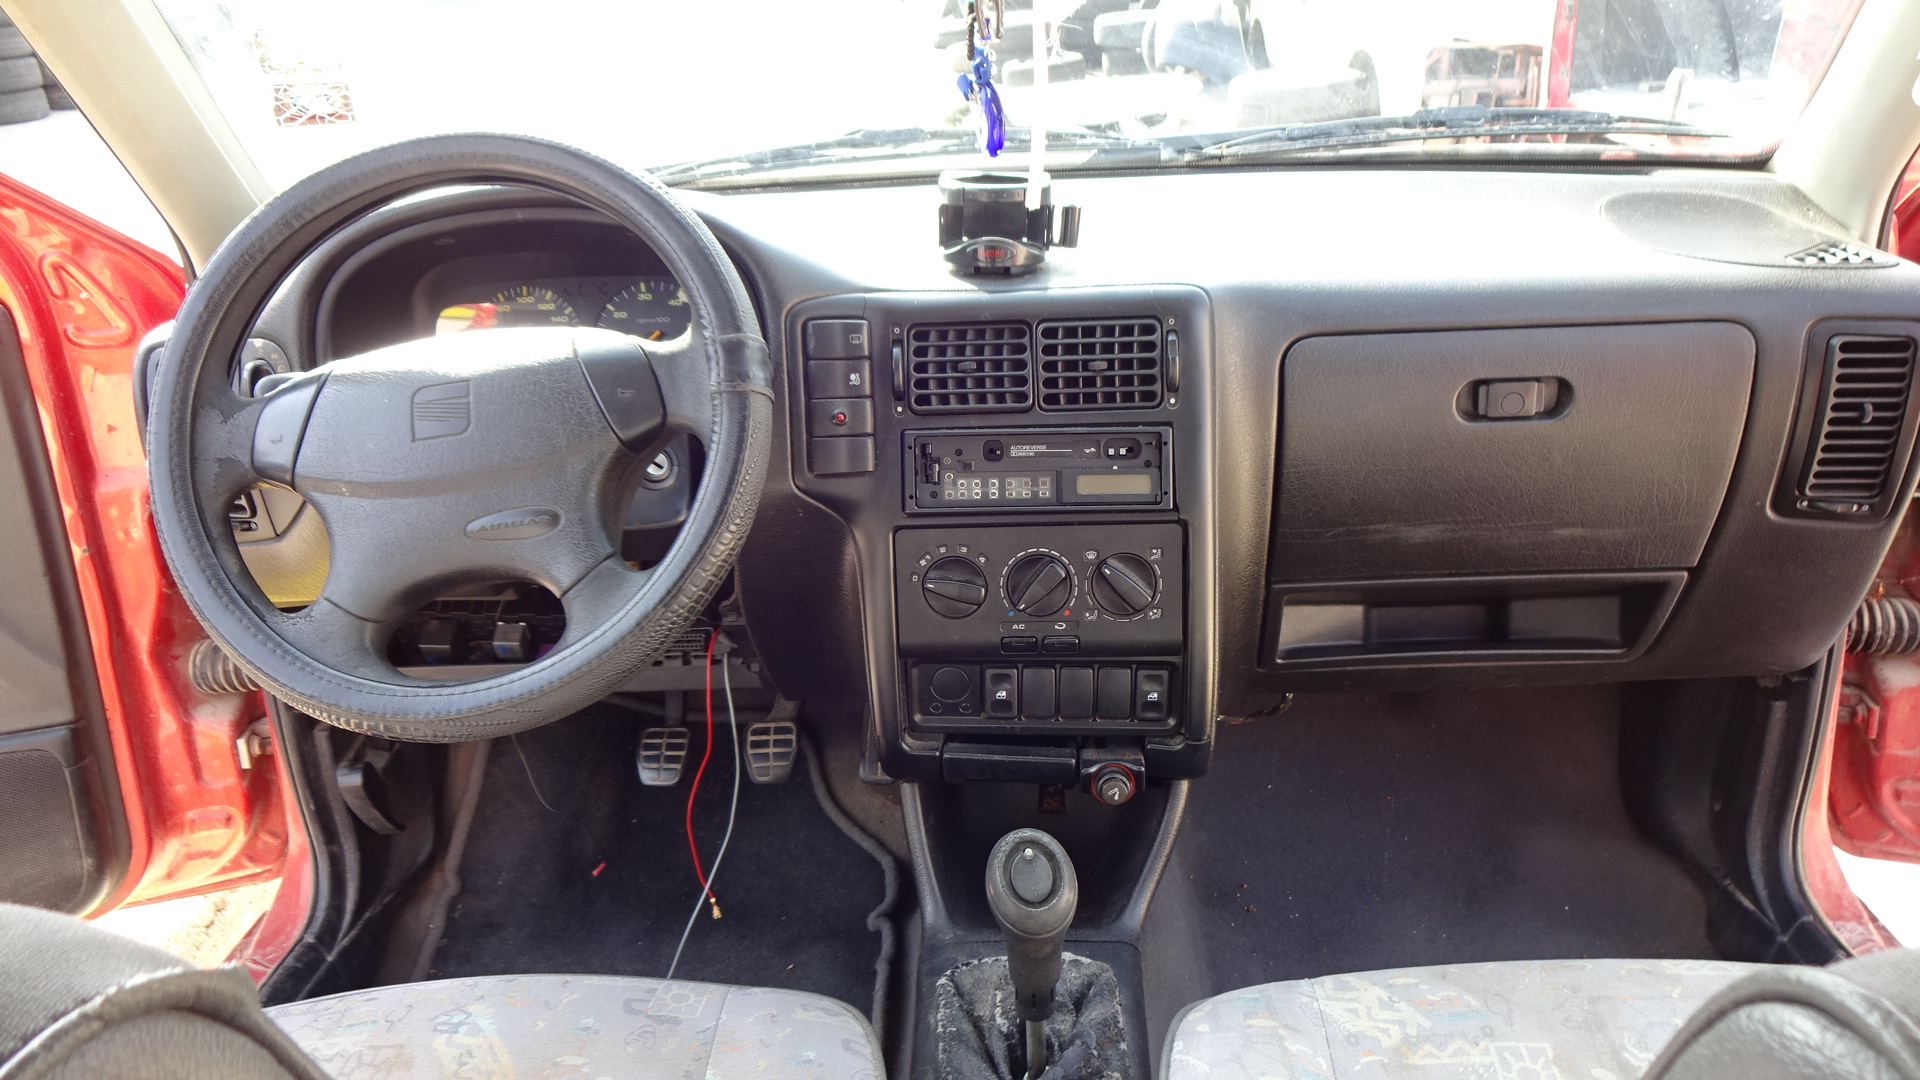 Ντουλαπάκι Seat Ibiza ’97 Προσφορά.